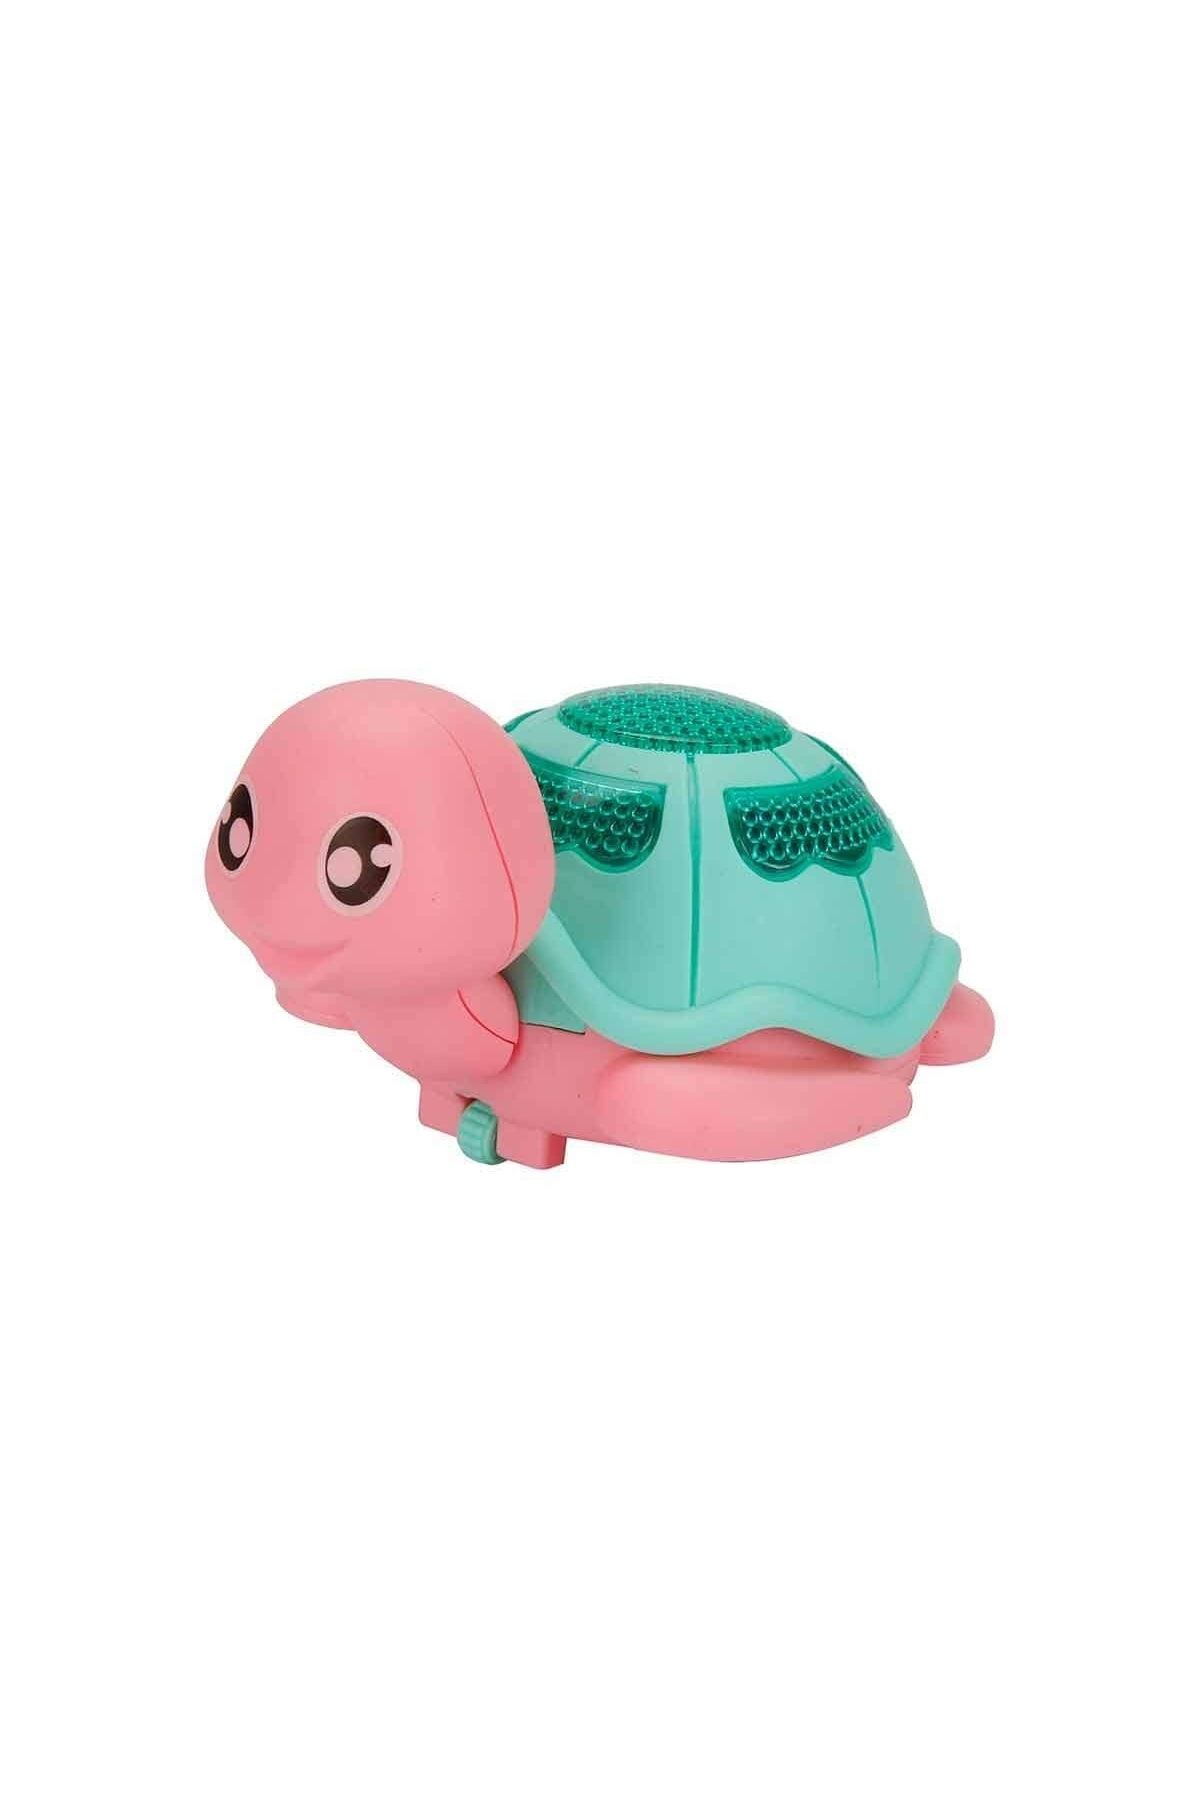 BAMTEBİ Cosby Sevimli Kaplumbağa Ipli Çek Bırak Modelli Işıklı Çarp Dön Sevimli Tosbağ 4 Renkli